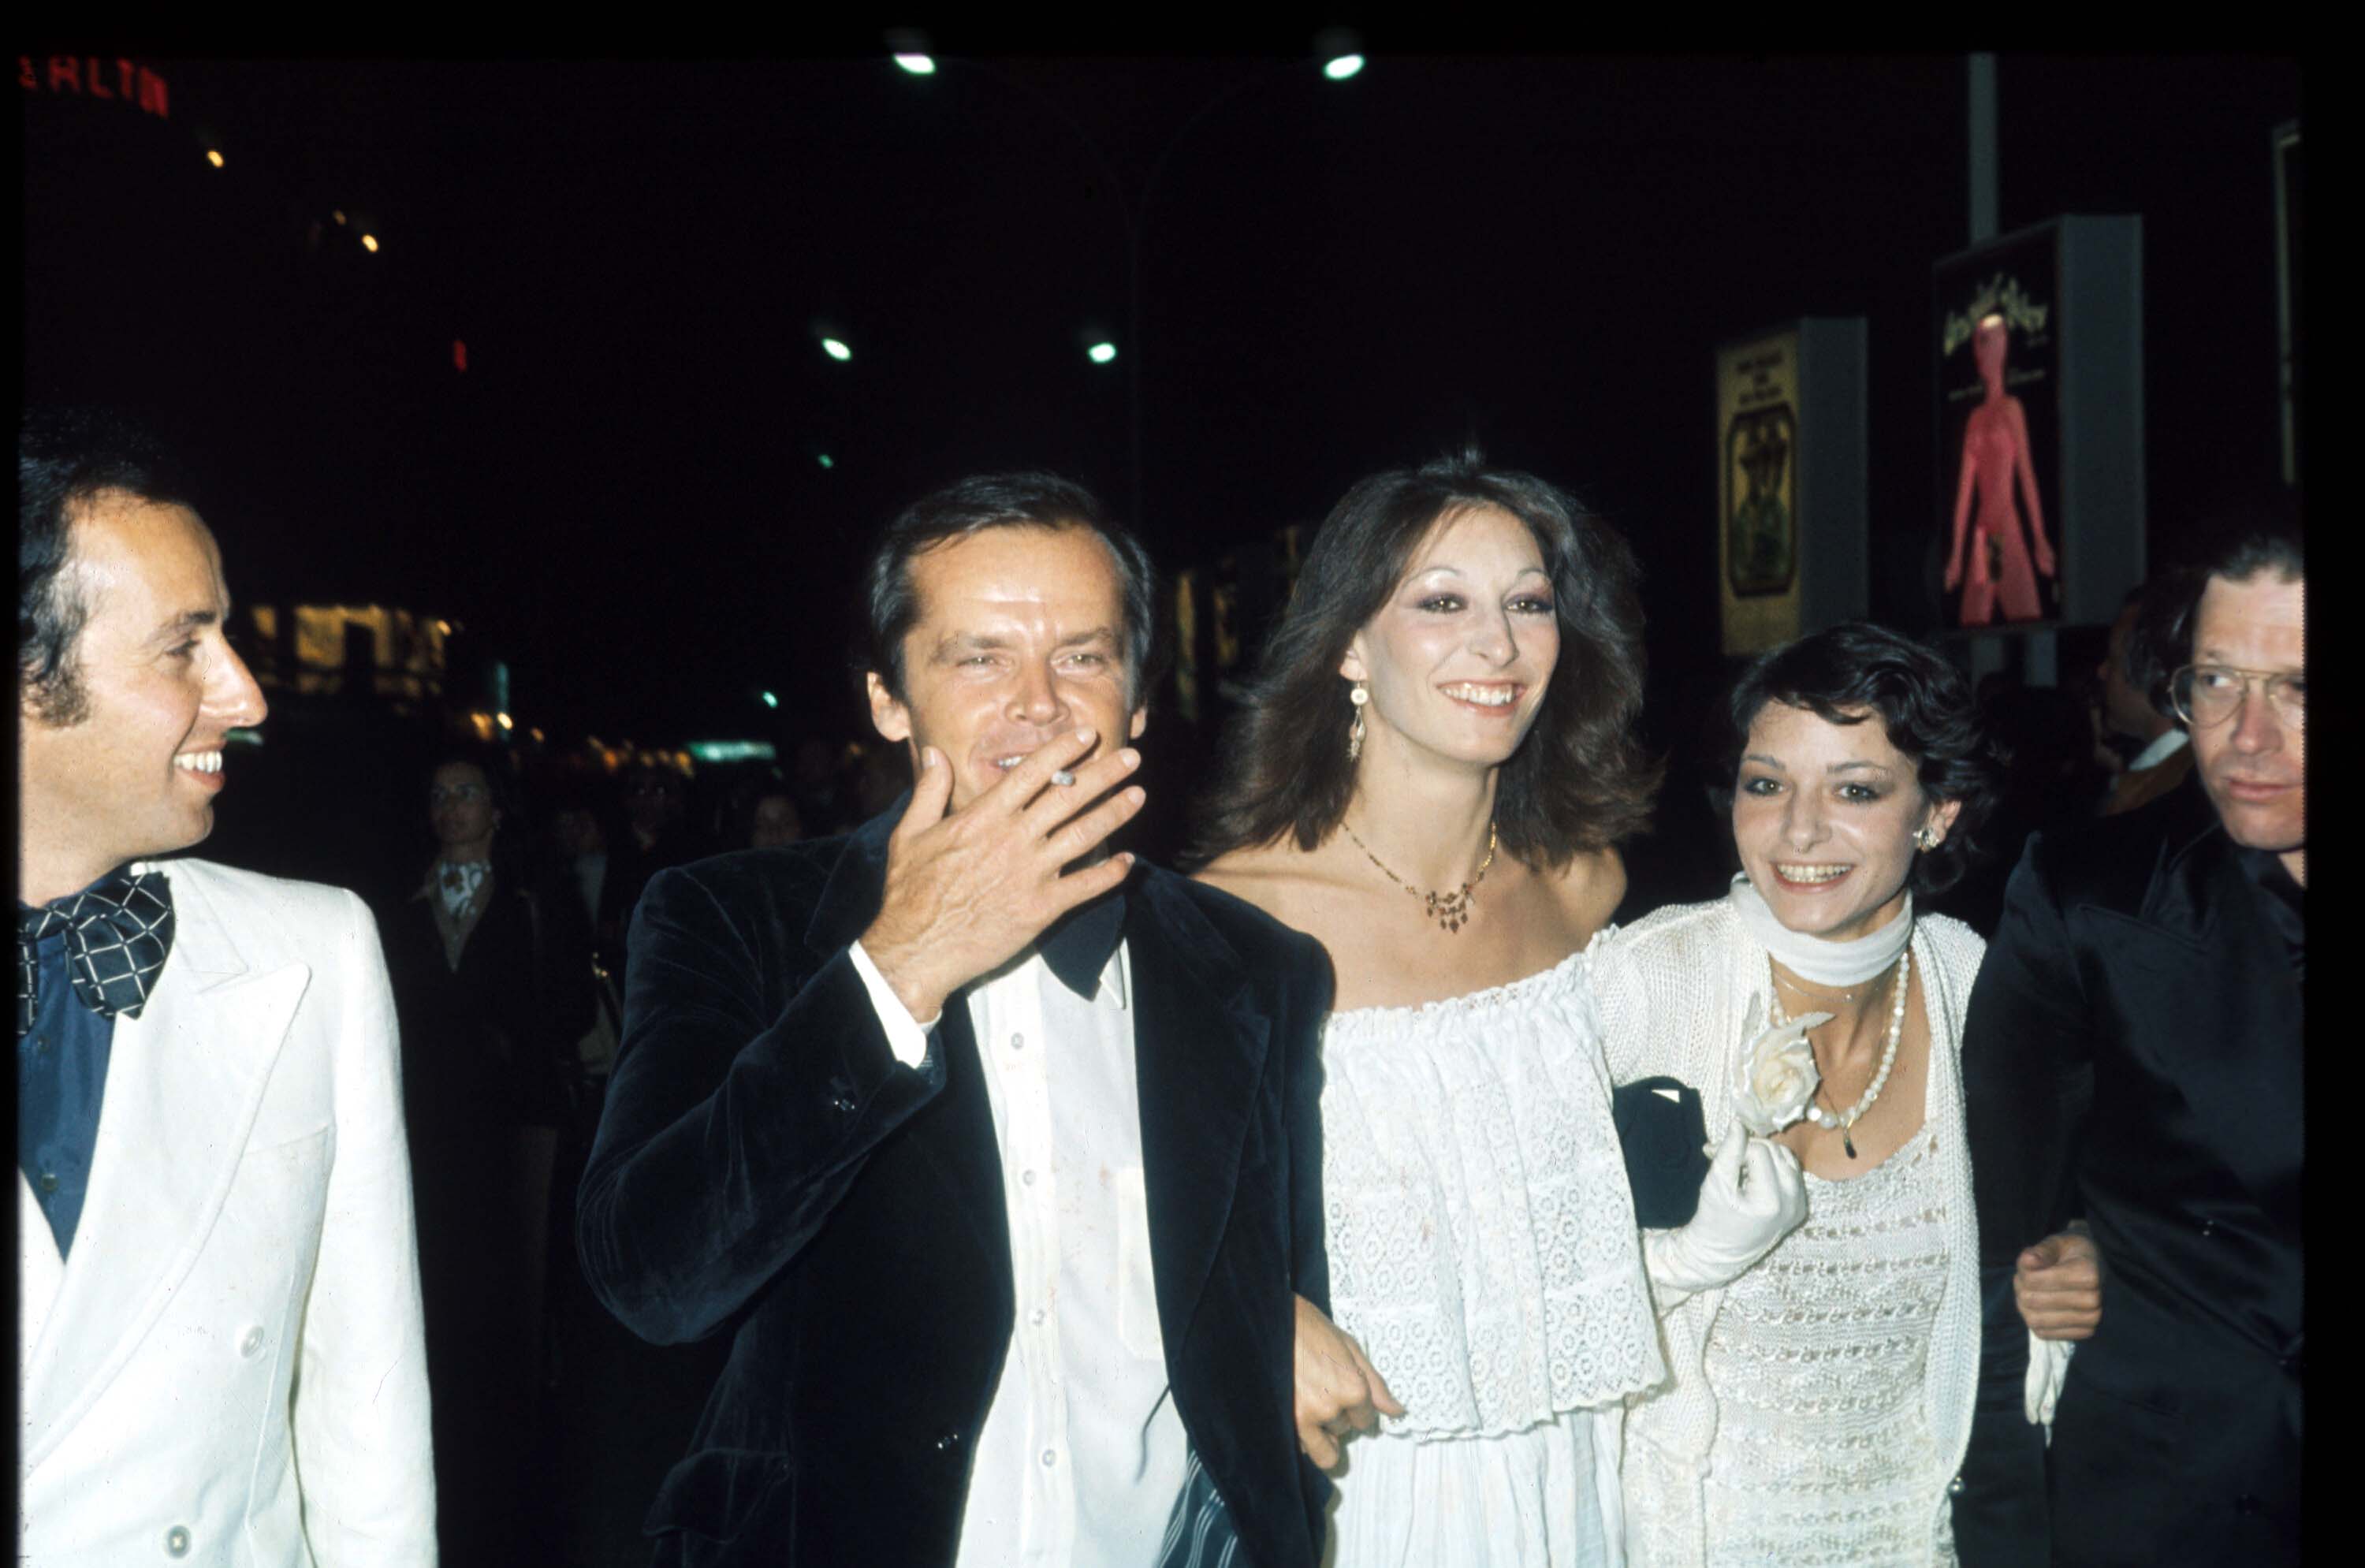 1974 г. Джак Никълсън и Анжелика Хюстън. Двамата се сгодятават през тази година. Във връзката си имат възходи и падения, моменти на раздели. Те са една от най-следените двойки през тези години. 